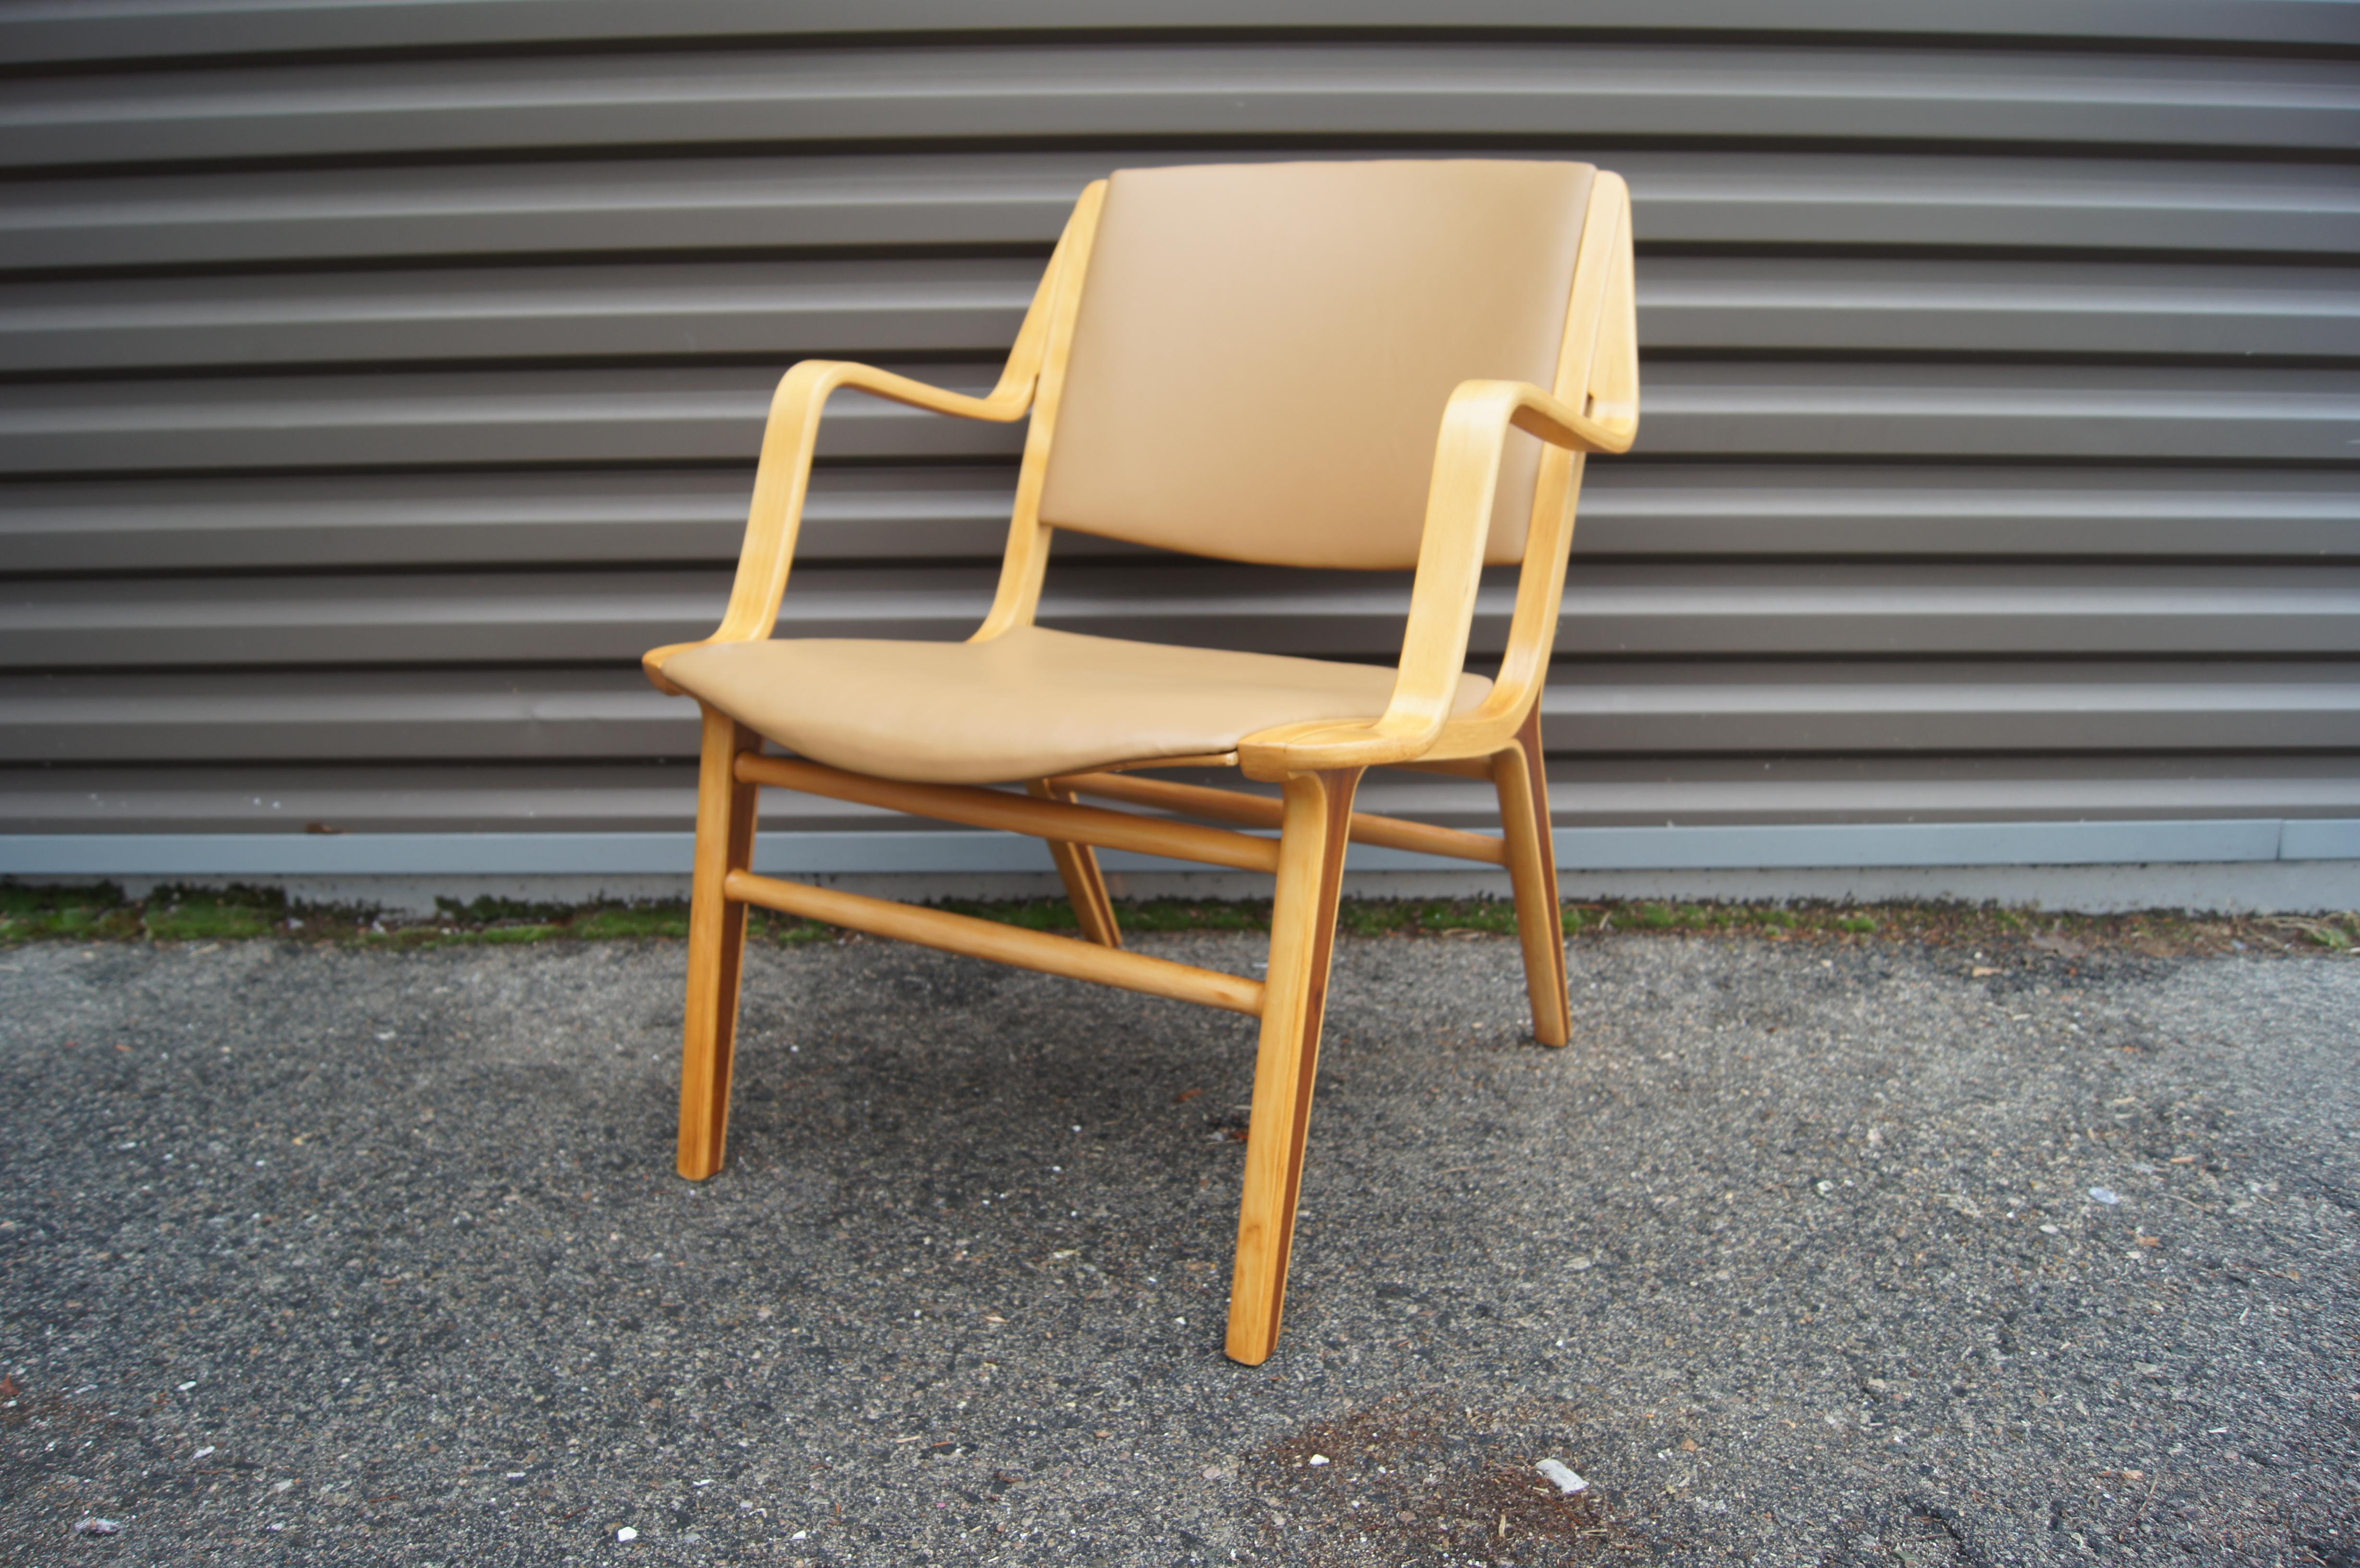 Der 1947 von Peter Hvidt und Orla Mølgaard Nielsen für Fritz Hansen entworfene Ax Chair hat einen sanft geschwungenen Buchenholzrahmen mit Armlehnen, der einen hohen Sitzkomfort bietet. Im Profil betrachtet, weisen die schrägen Beine einen